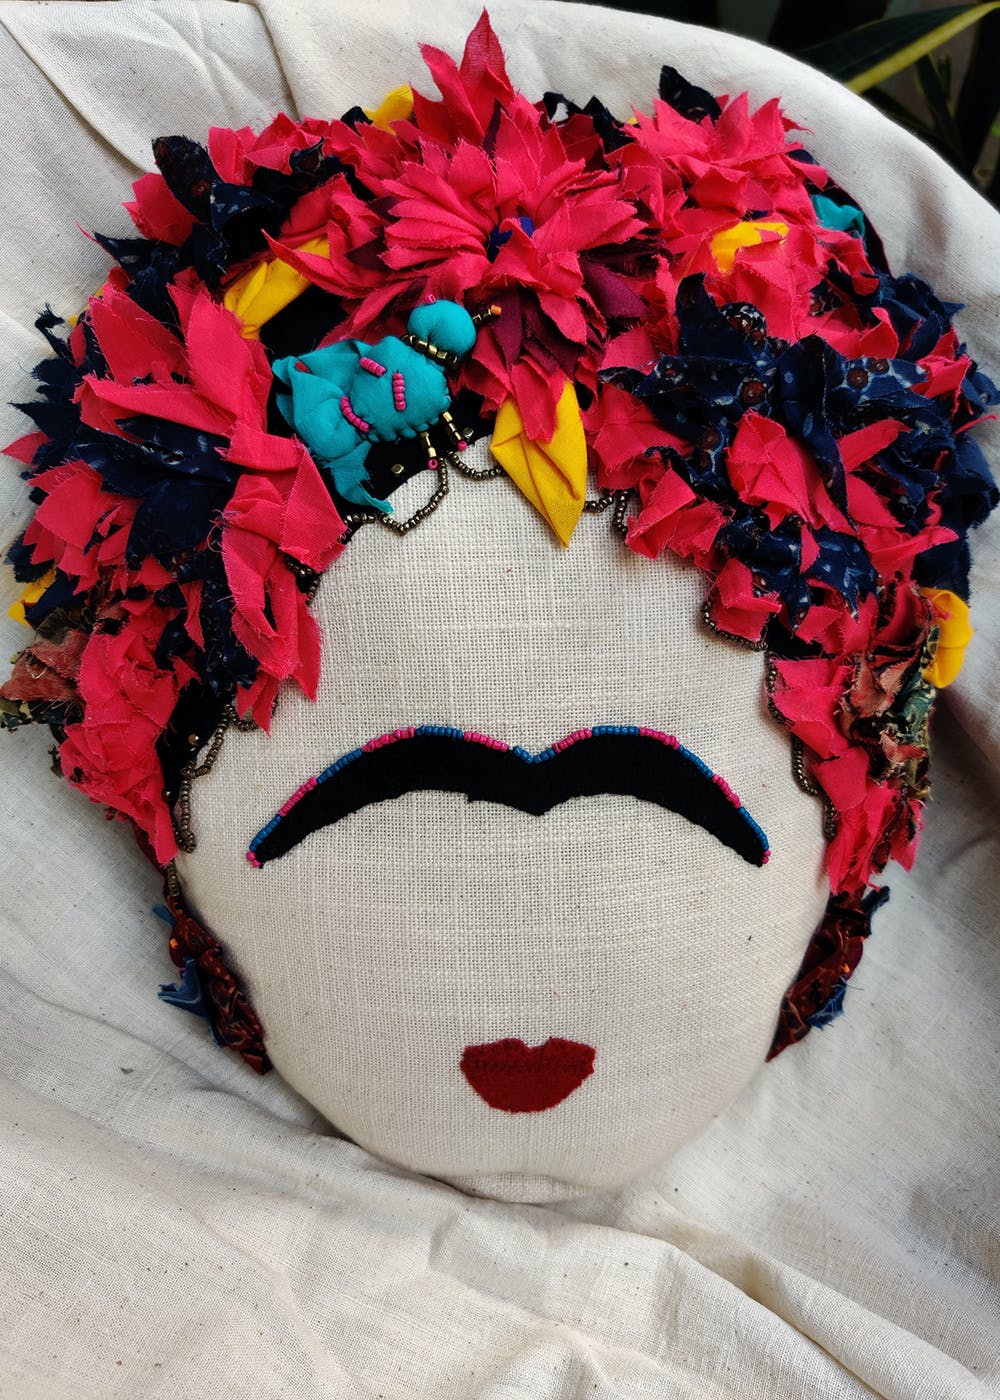 Frida Kahlo Inspired Cushion